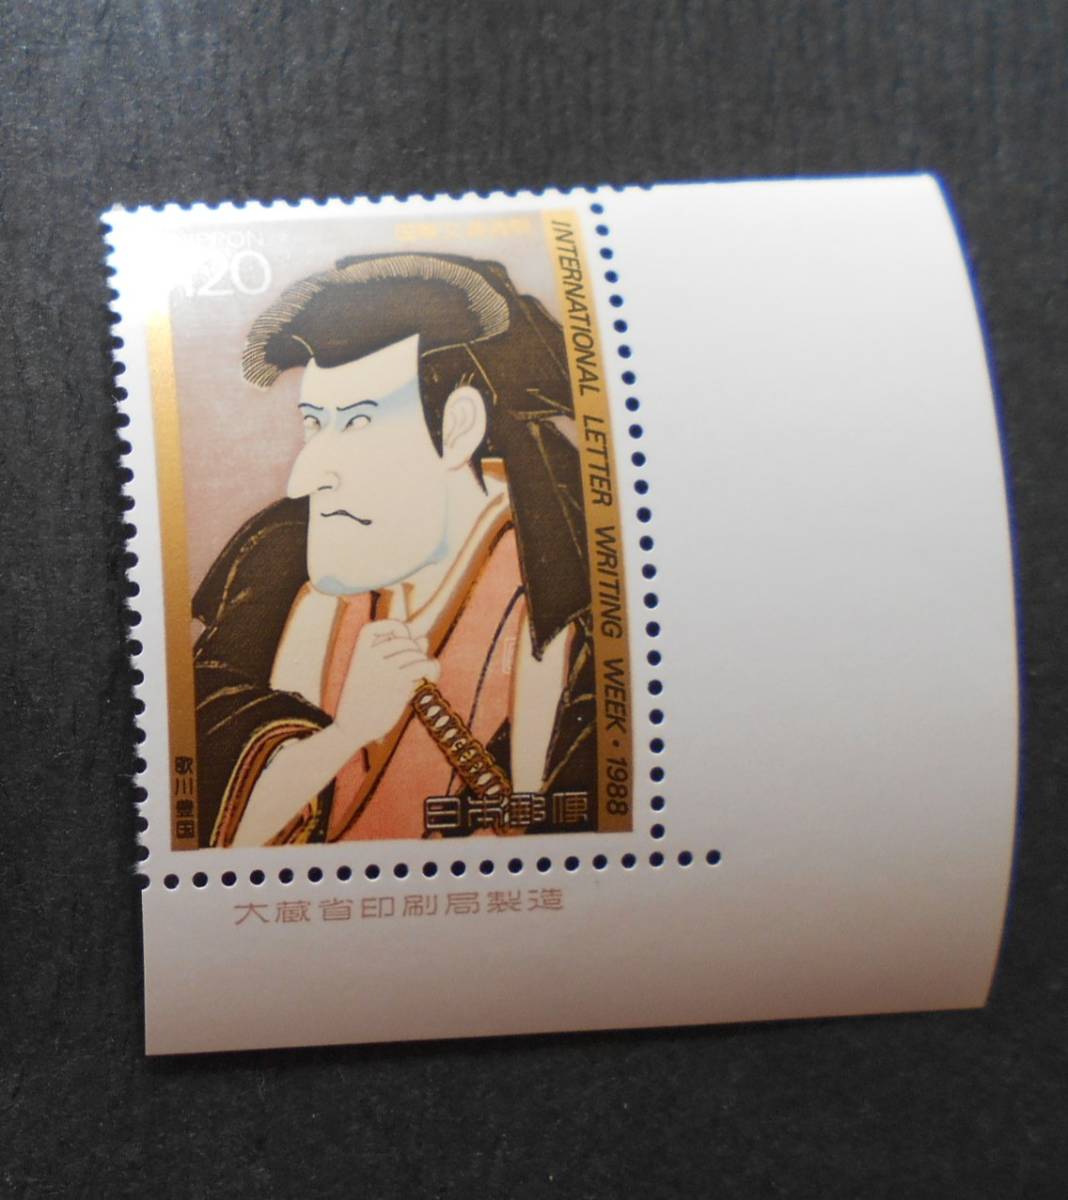 銘版付き文通週間 1988 佐々木巌流 未使用120円切手の画像1